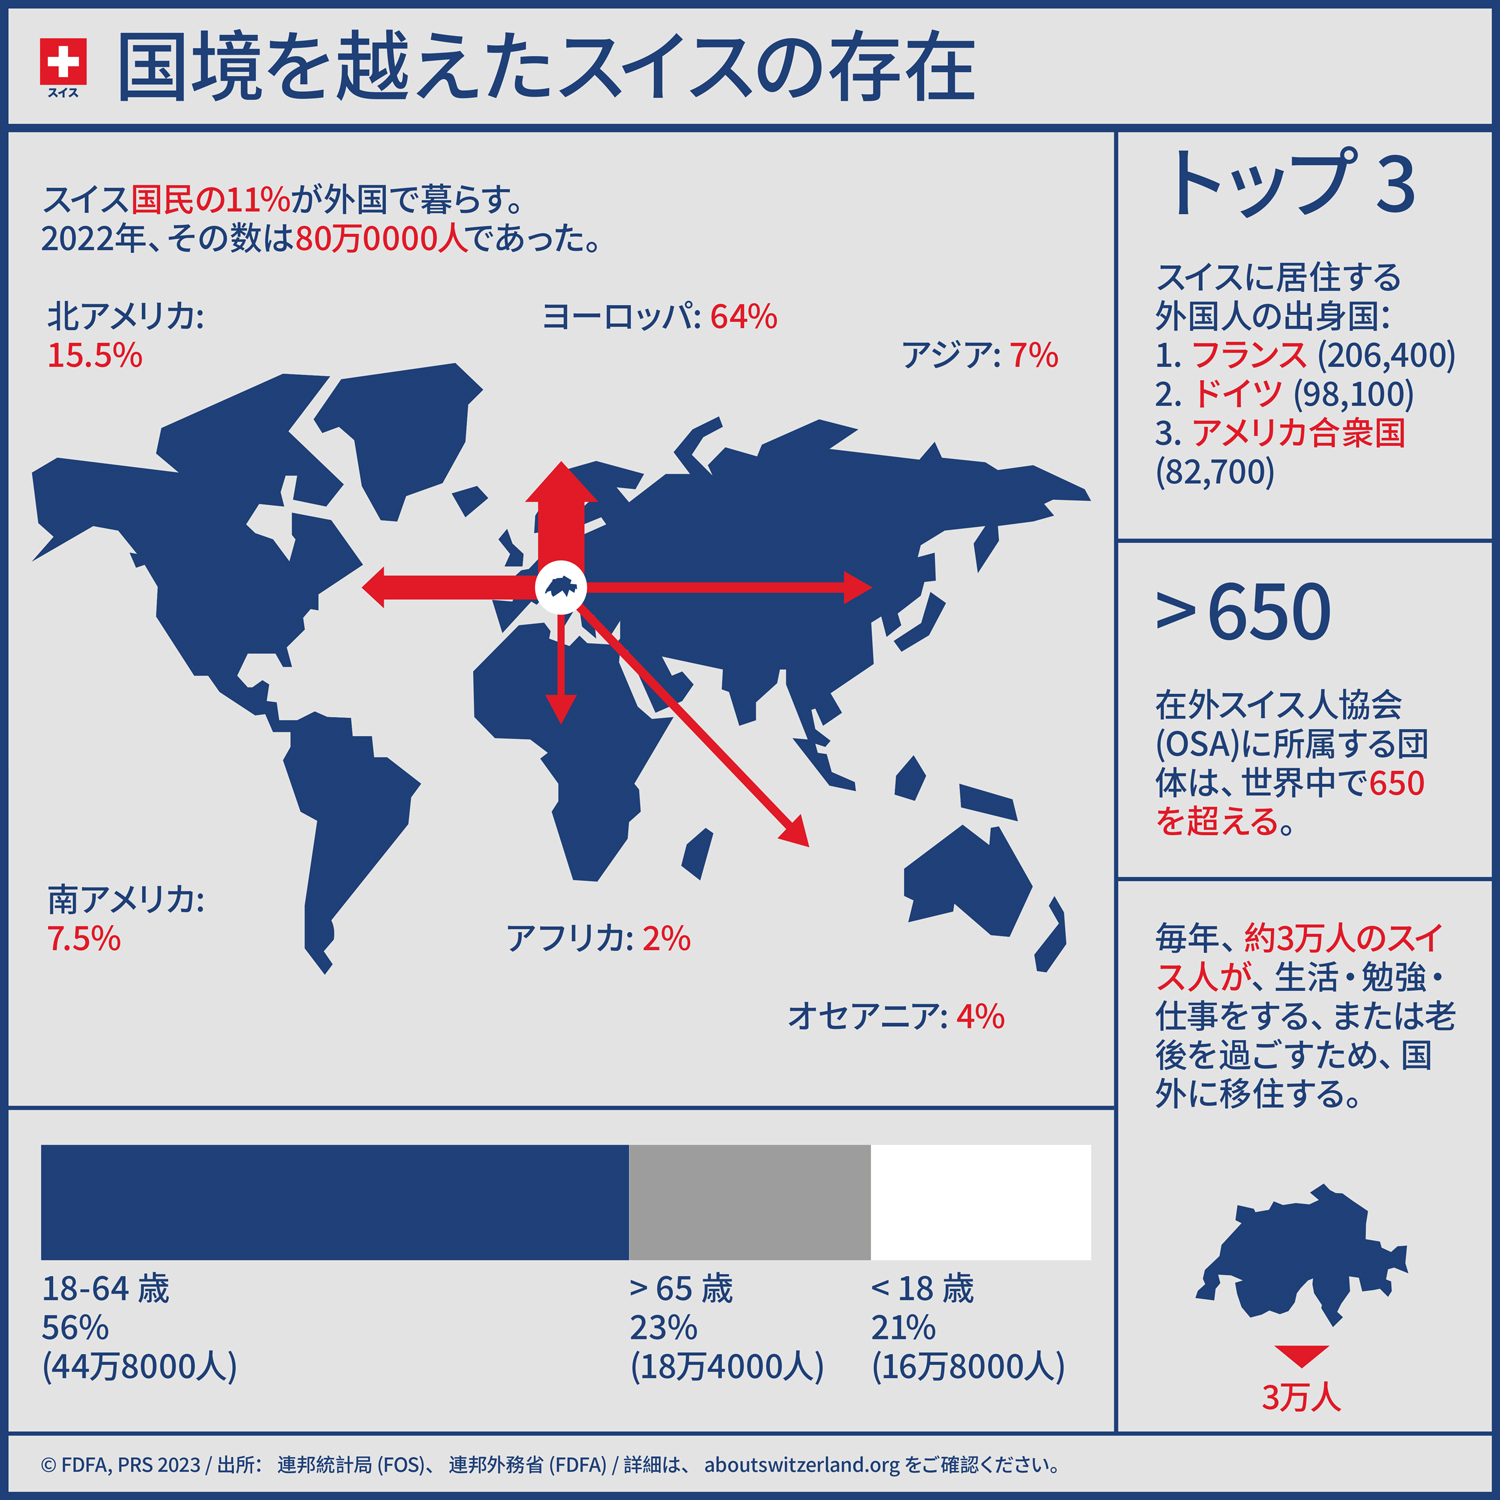 インフォグラフィックが示す国外に暮らすスイス人の統計データ